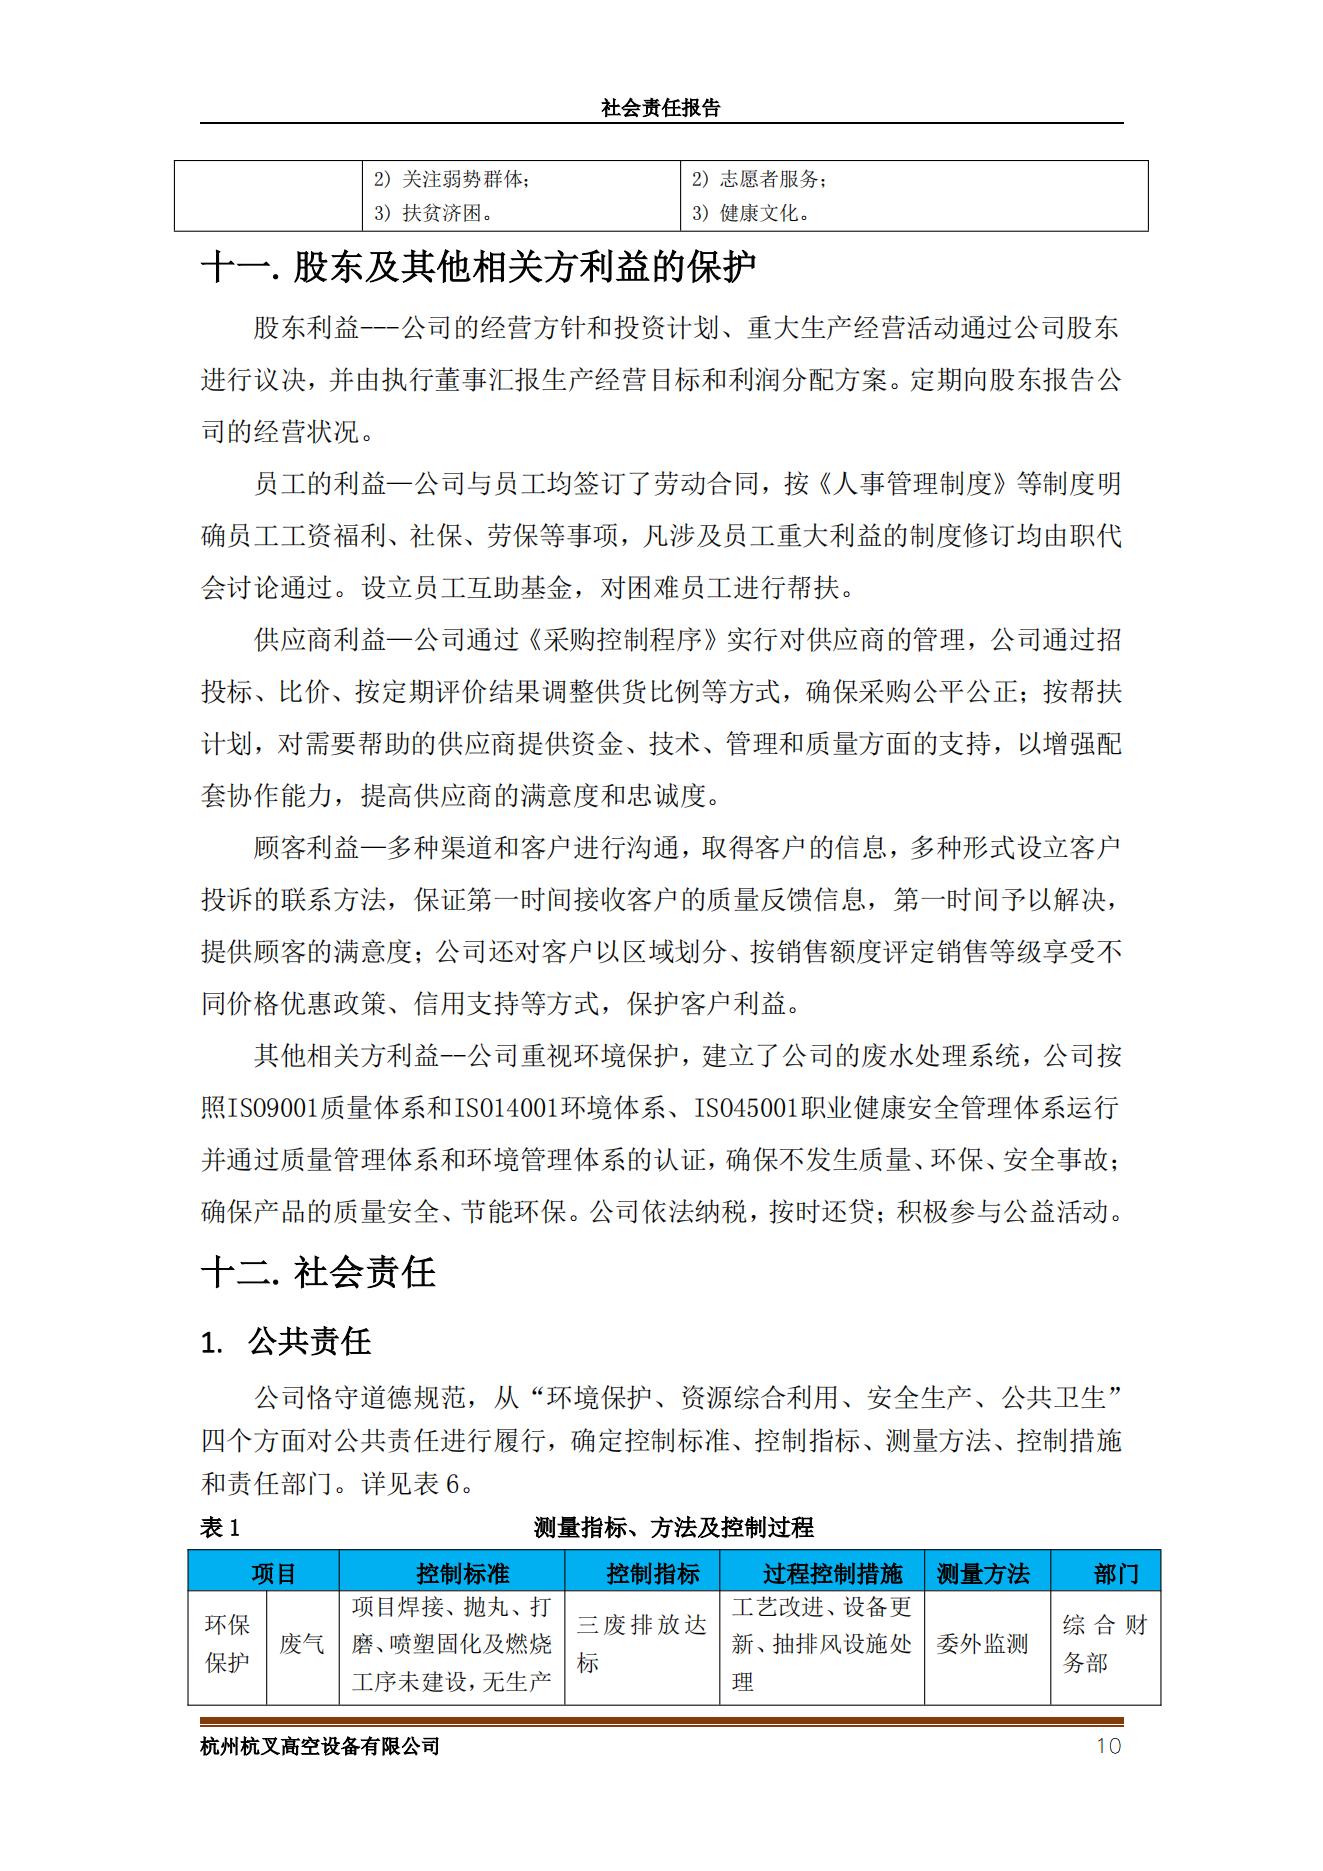 杭州杭叉高空設備2021年社會責任報告(圖10)